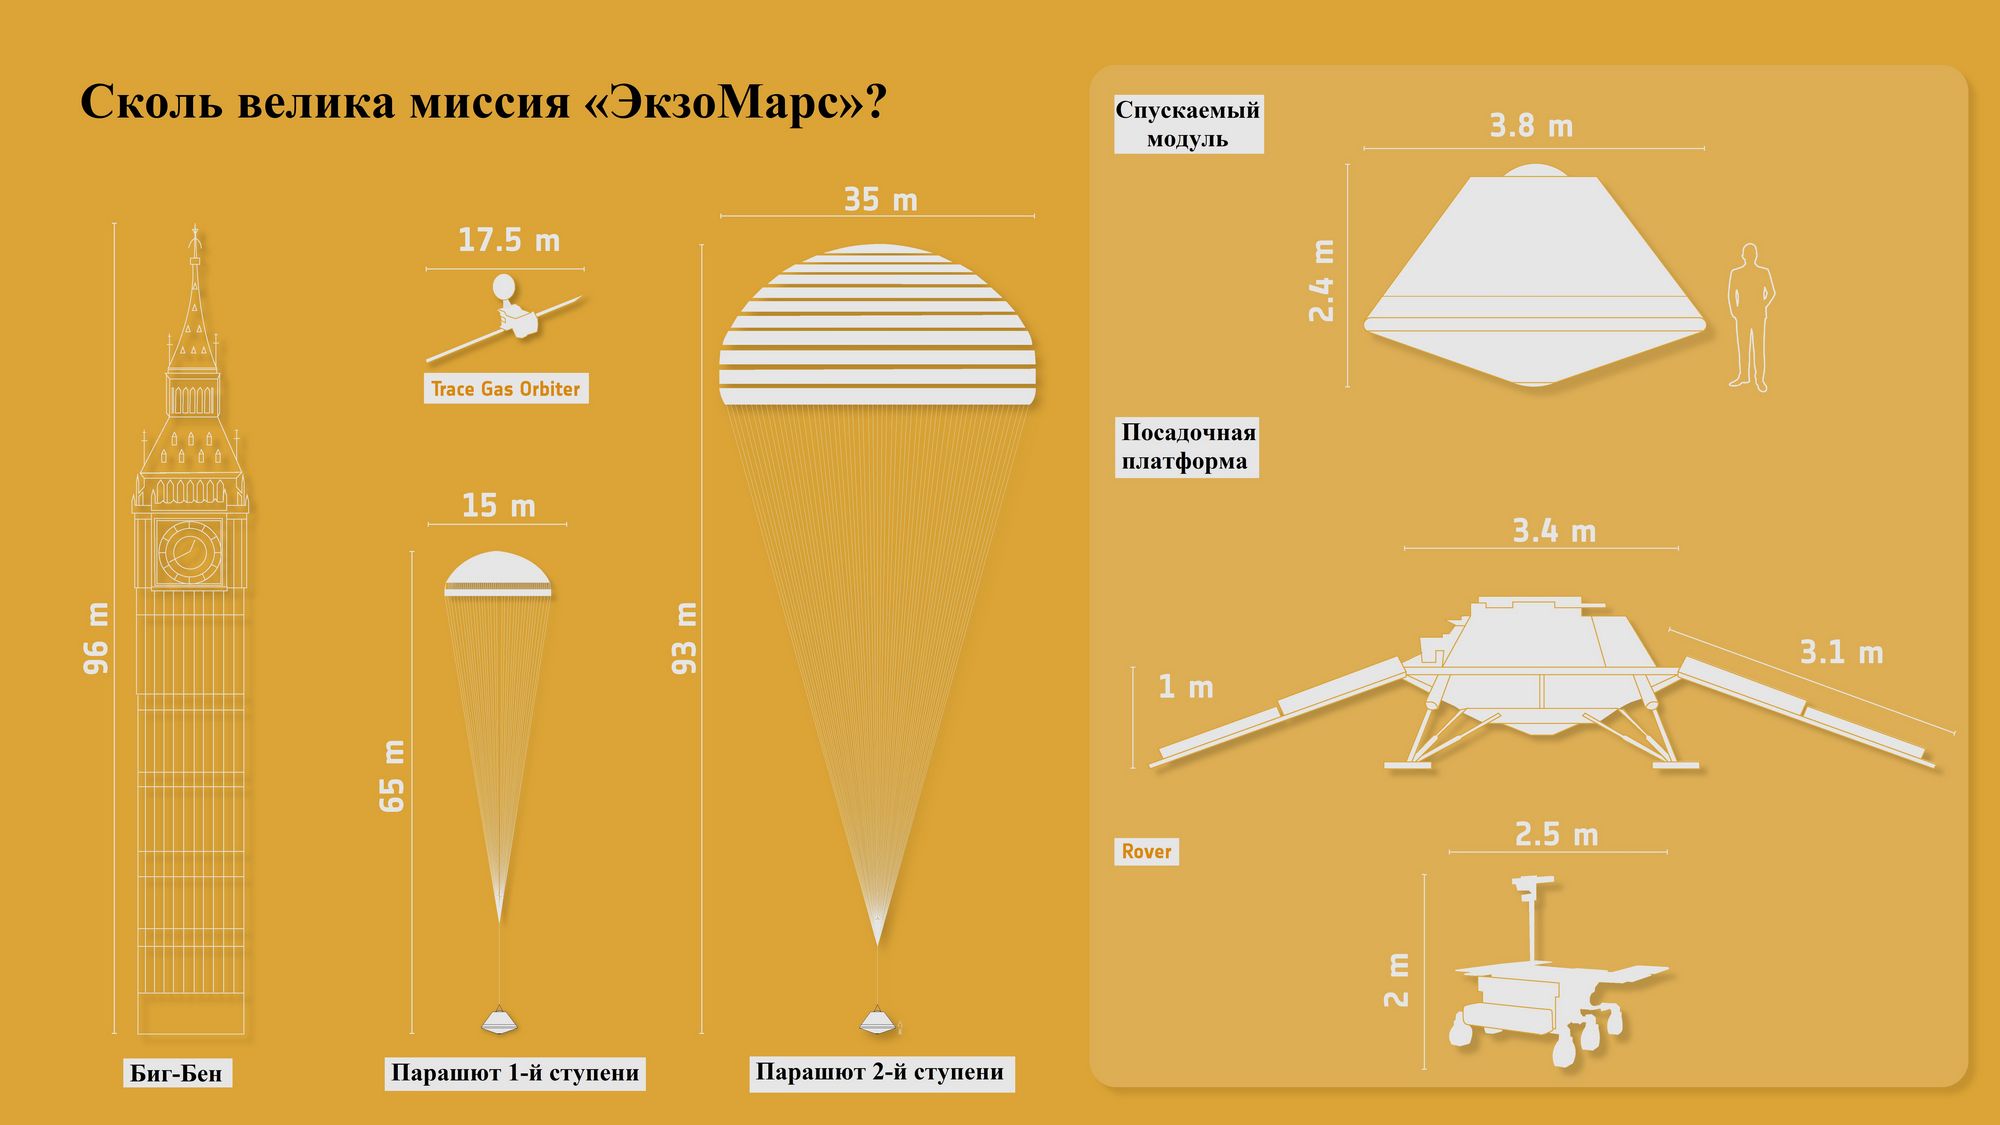 Запуск «ЭкзоМарса» отложен до следующего пускового окна в 2022 году марсохода, которые, запуск, запуска, испытания, посадочной, миссии, должен, также, парашют, ракетуноситель, испытаний, после, исследования, «ЭкзоМарс», будет, европейской, программы, ситуации, парашютов